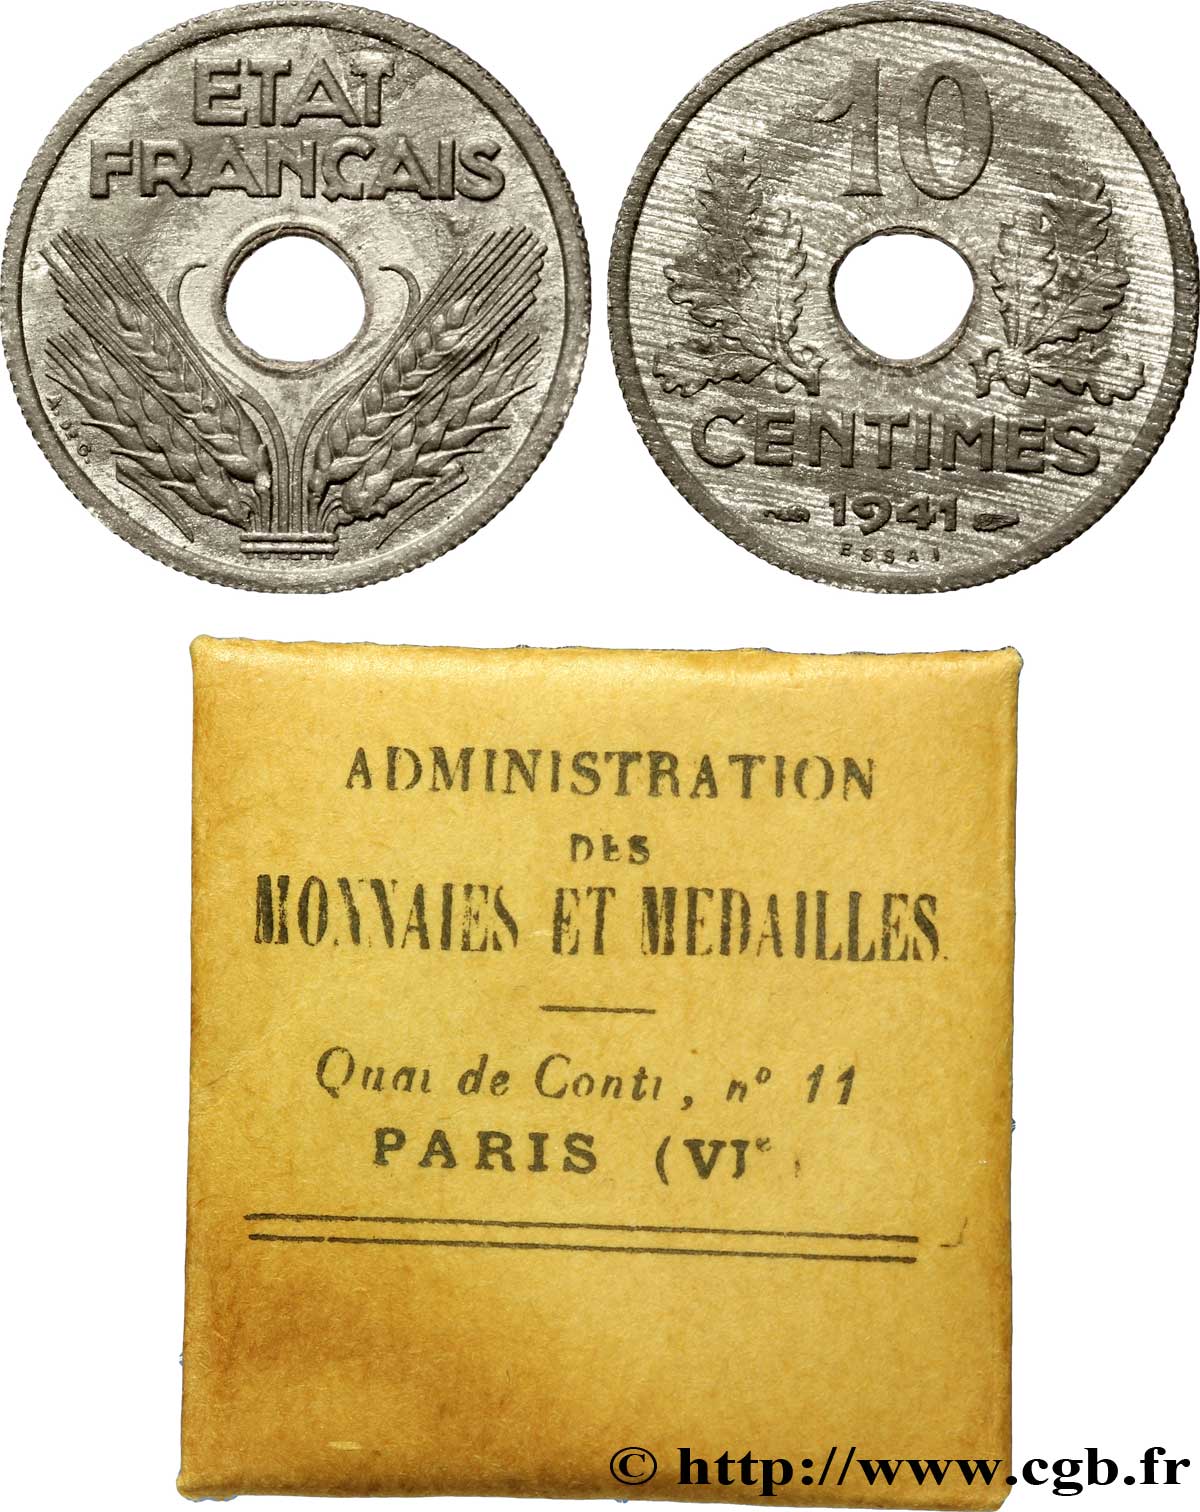 Essai de 10 centimes, État français, grand module 1941  F.141/1 SUP 